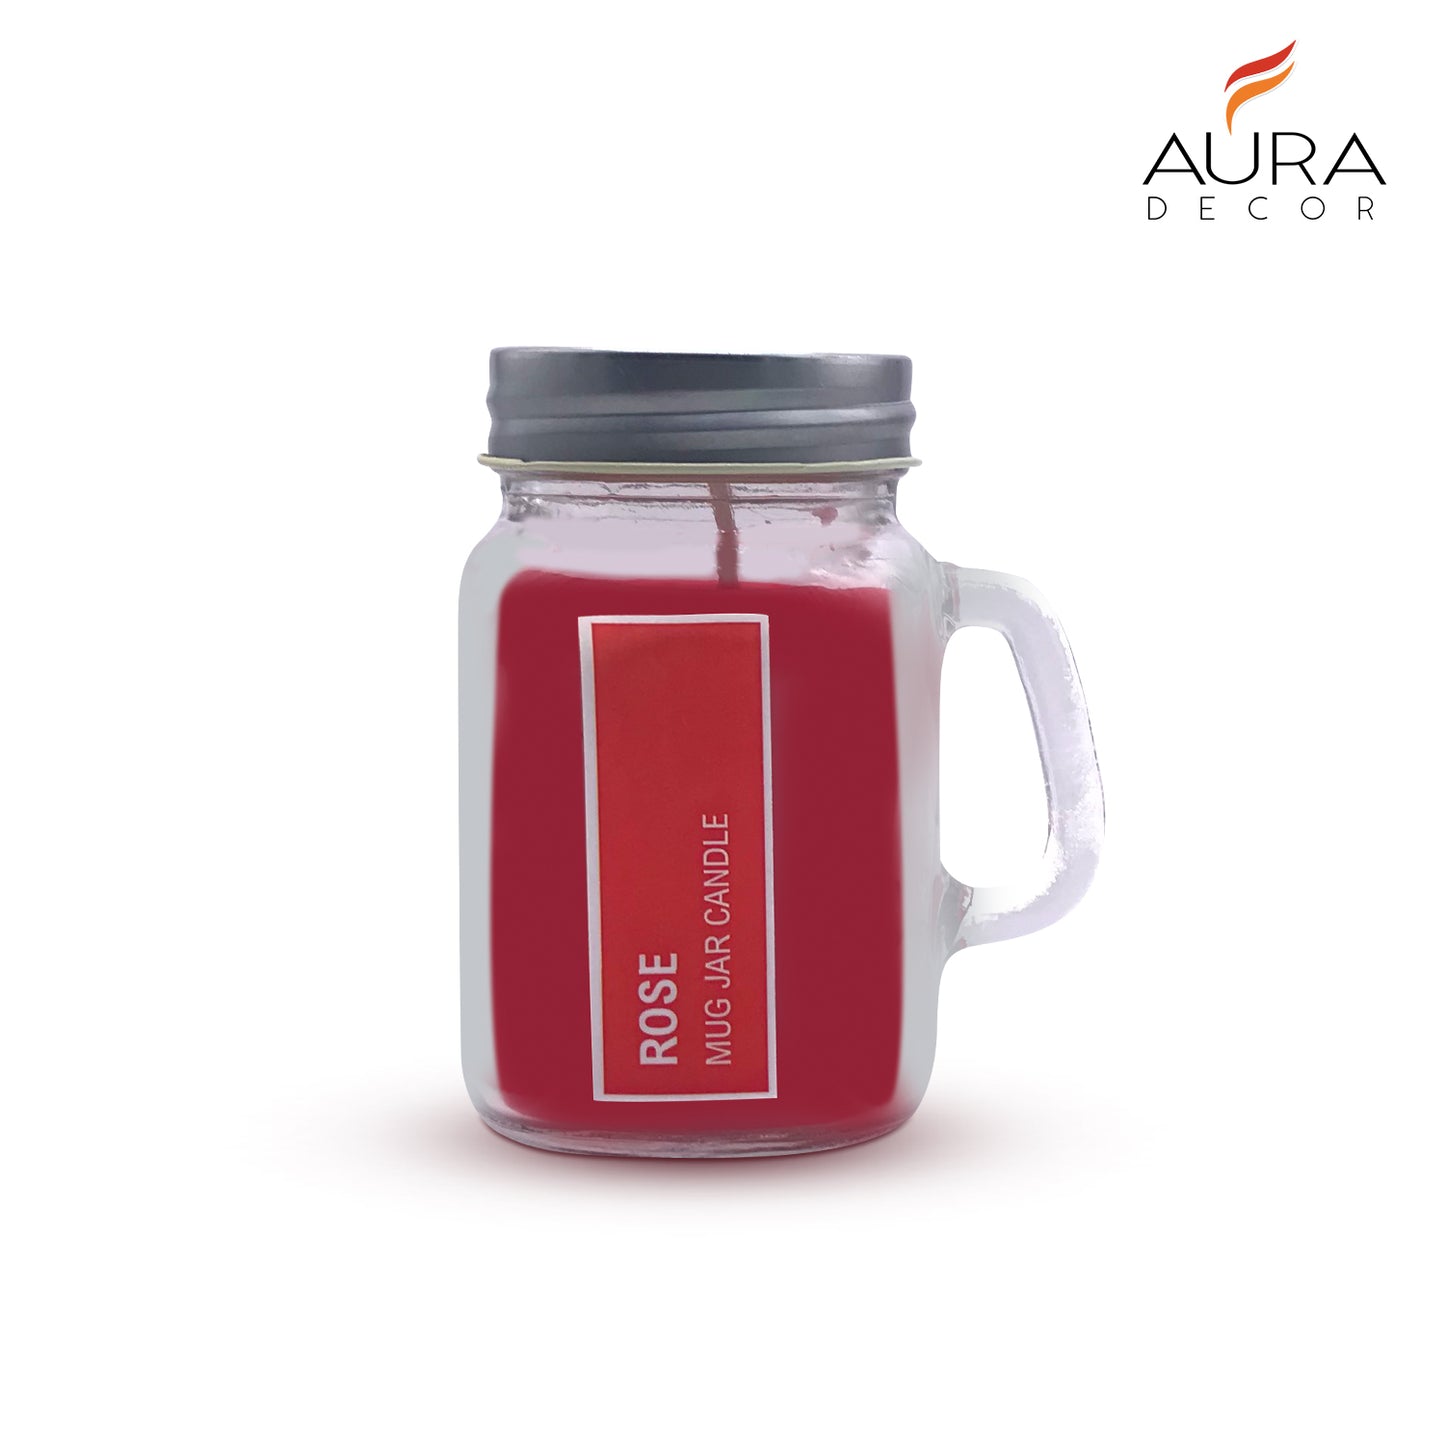 AuraDecor Mug Jar Candle ( Rose Fragrance )